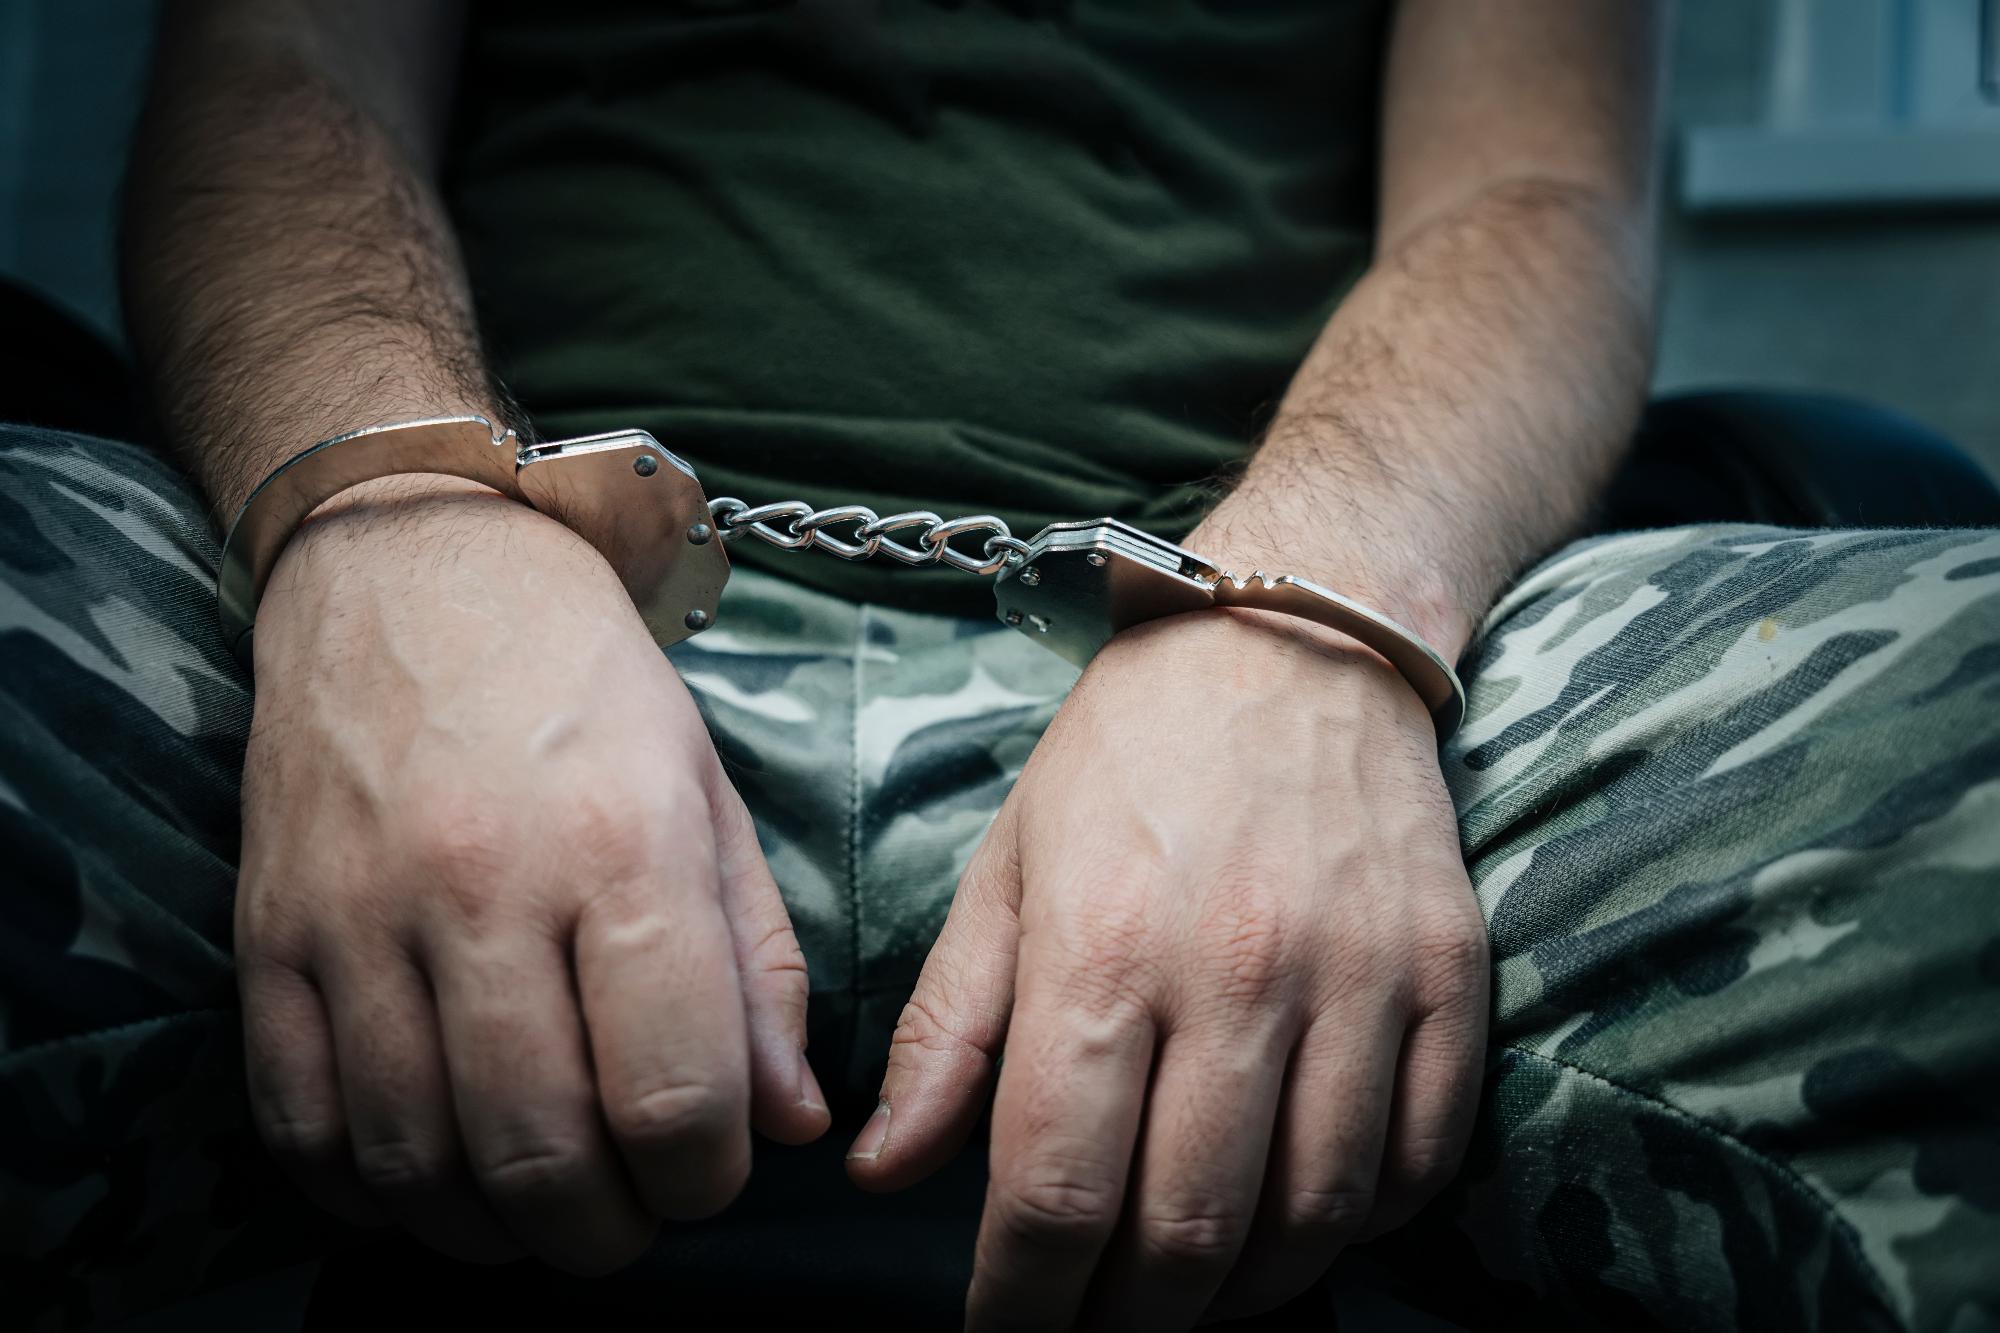 Kiadatási letartóztatásba került egy háborús bűncselekményekkel vádolt szerb férfi